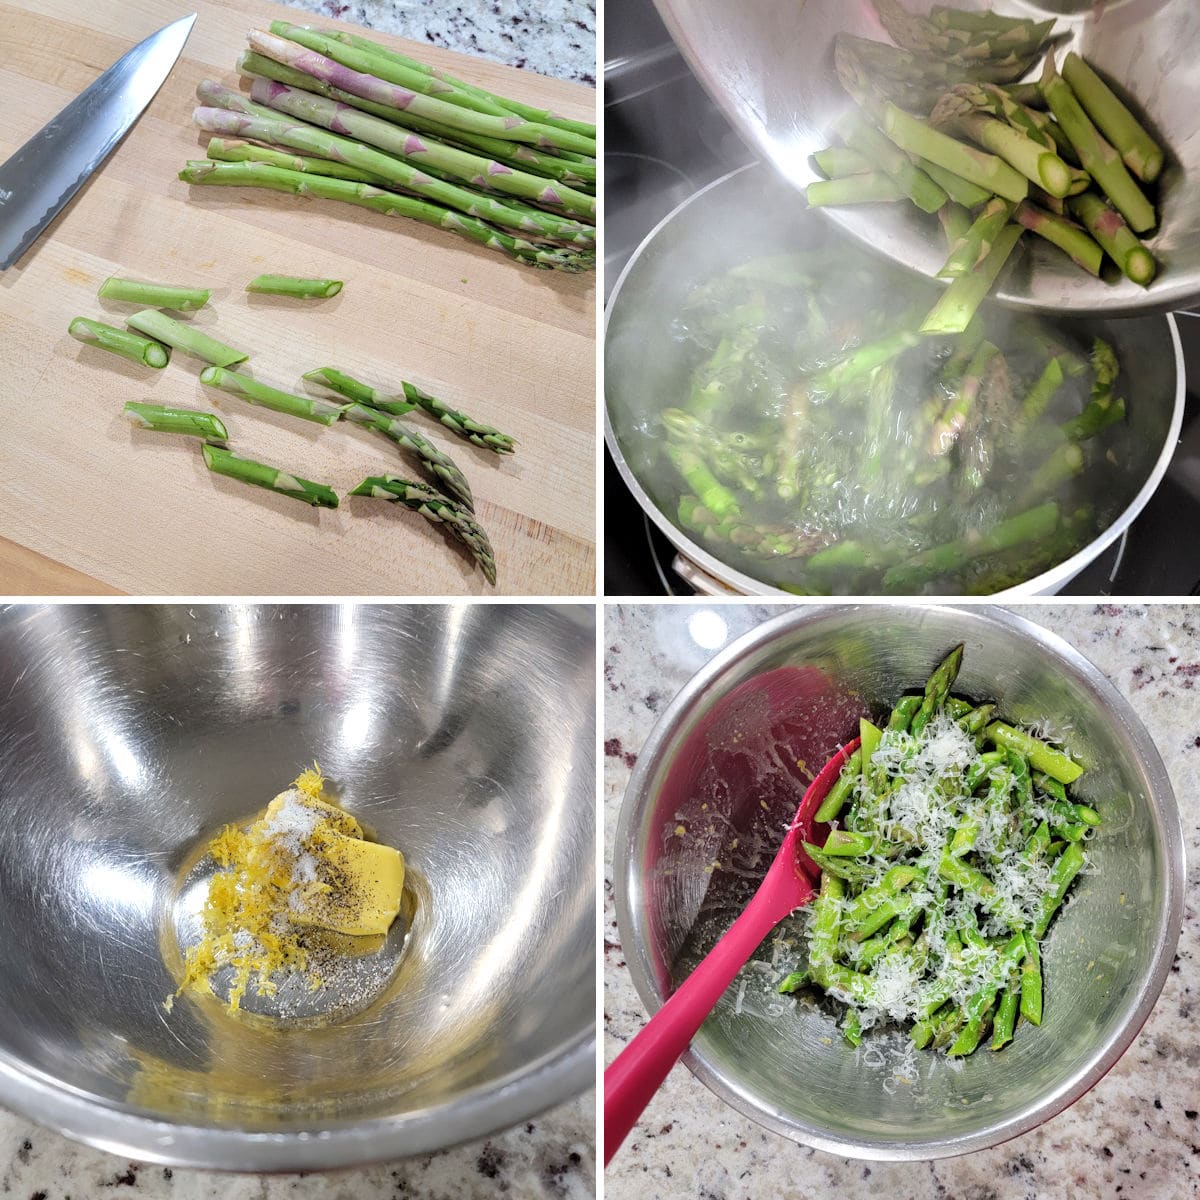 A collage showing the preparation of lemon parmesan asparagus.